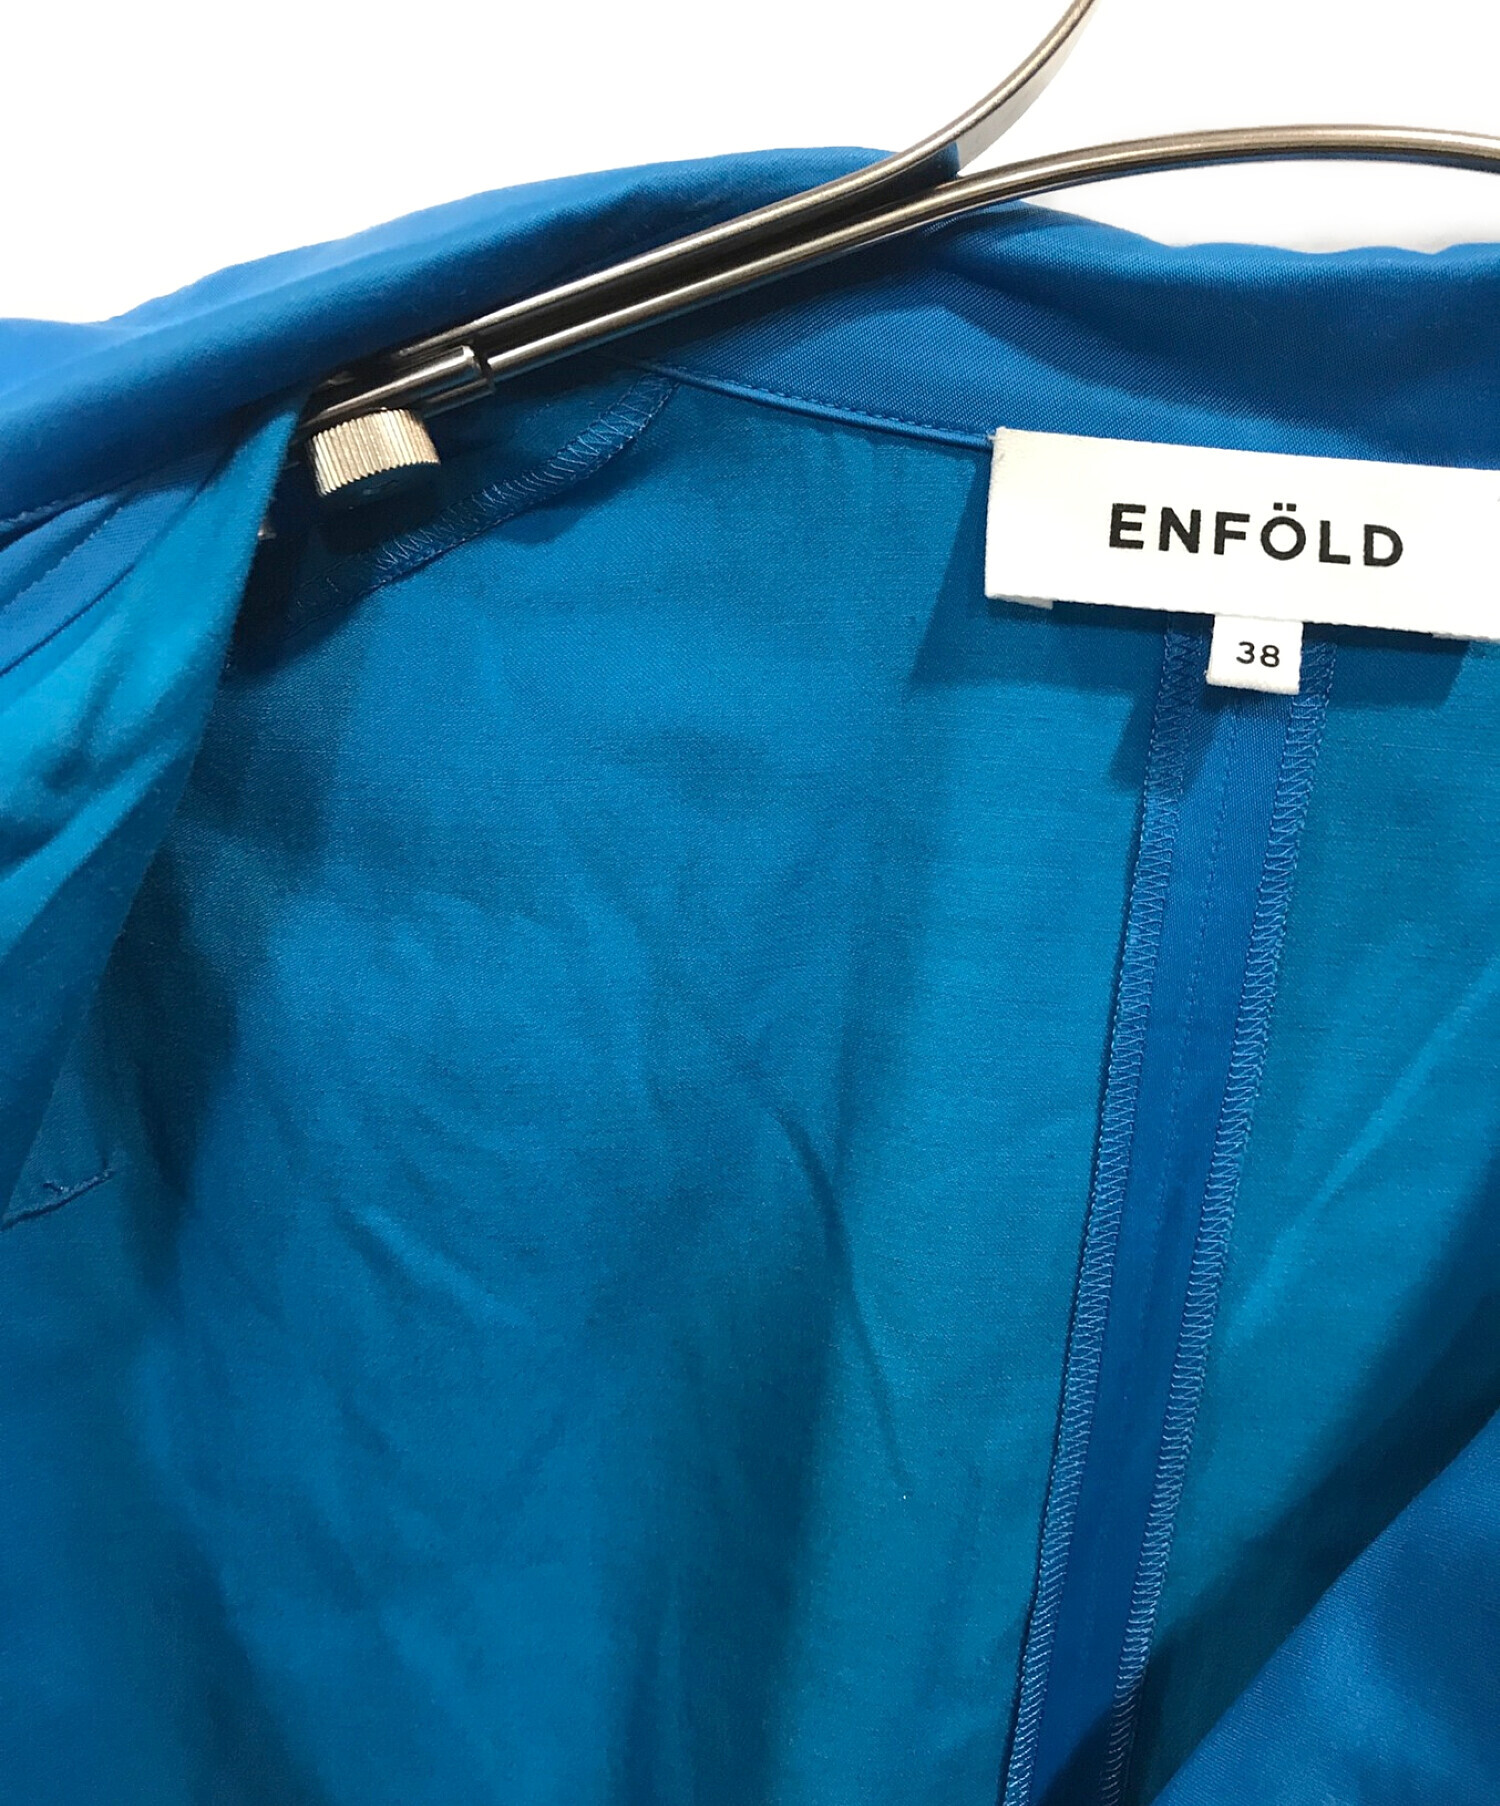 ENFOLD (エンフォルド) オールインワン ブルー サイズ:38